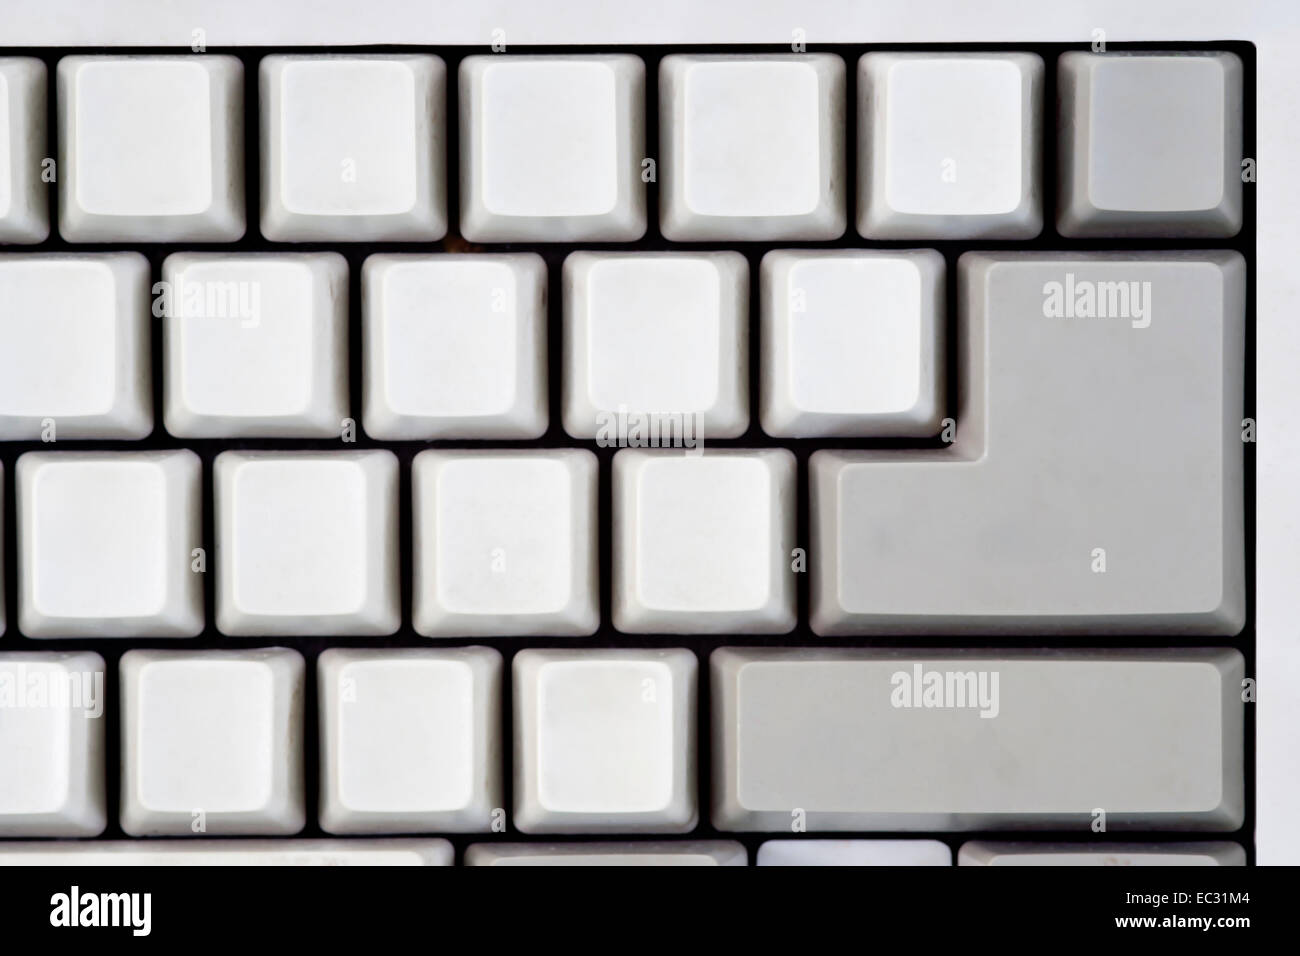 Detalle del teclado en blanco - conjunto de teclas - entrar Foto de stock